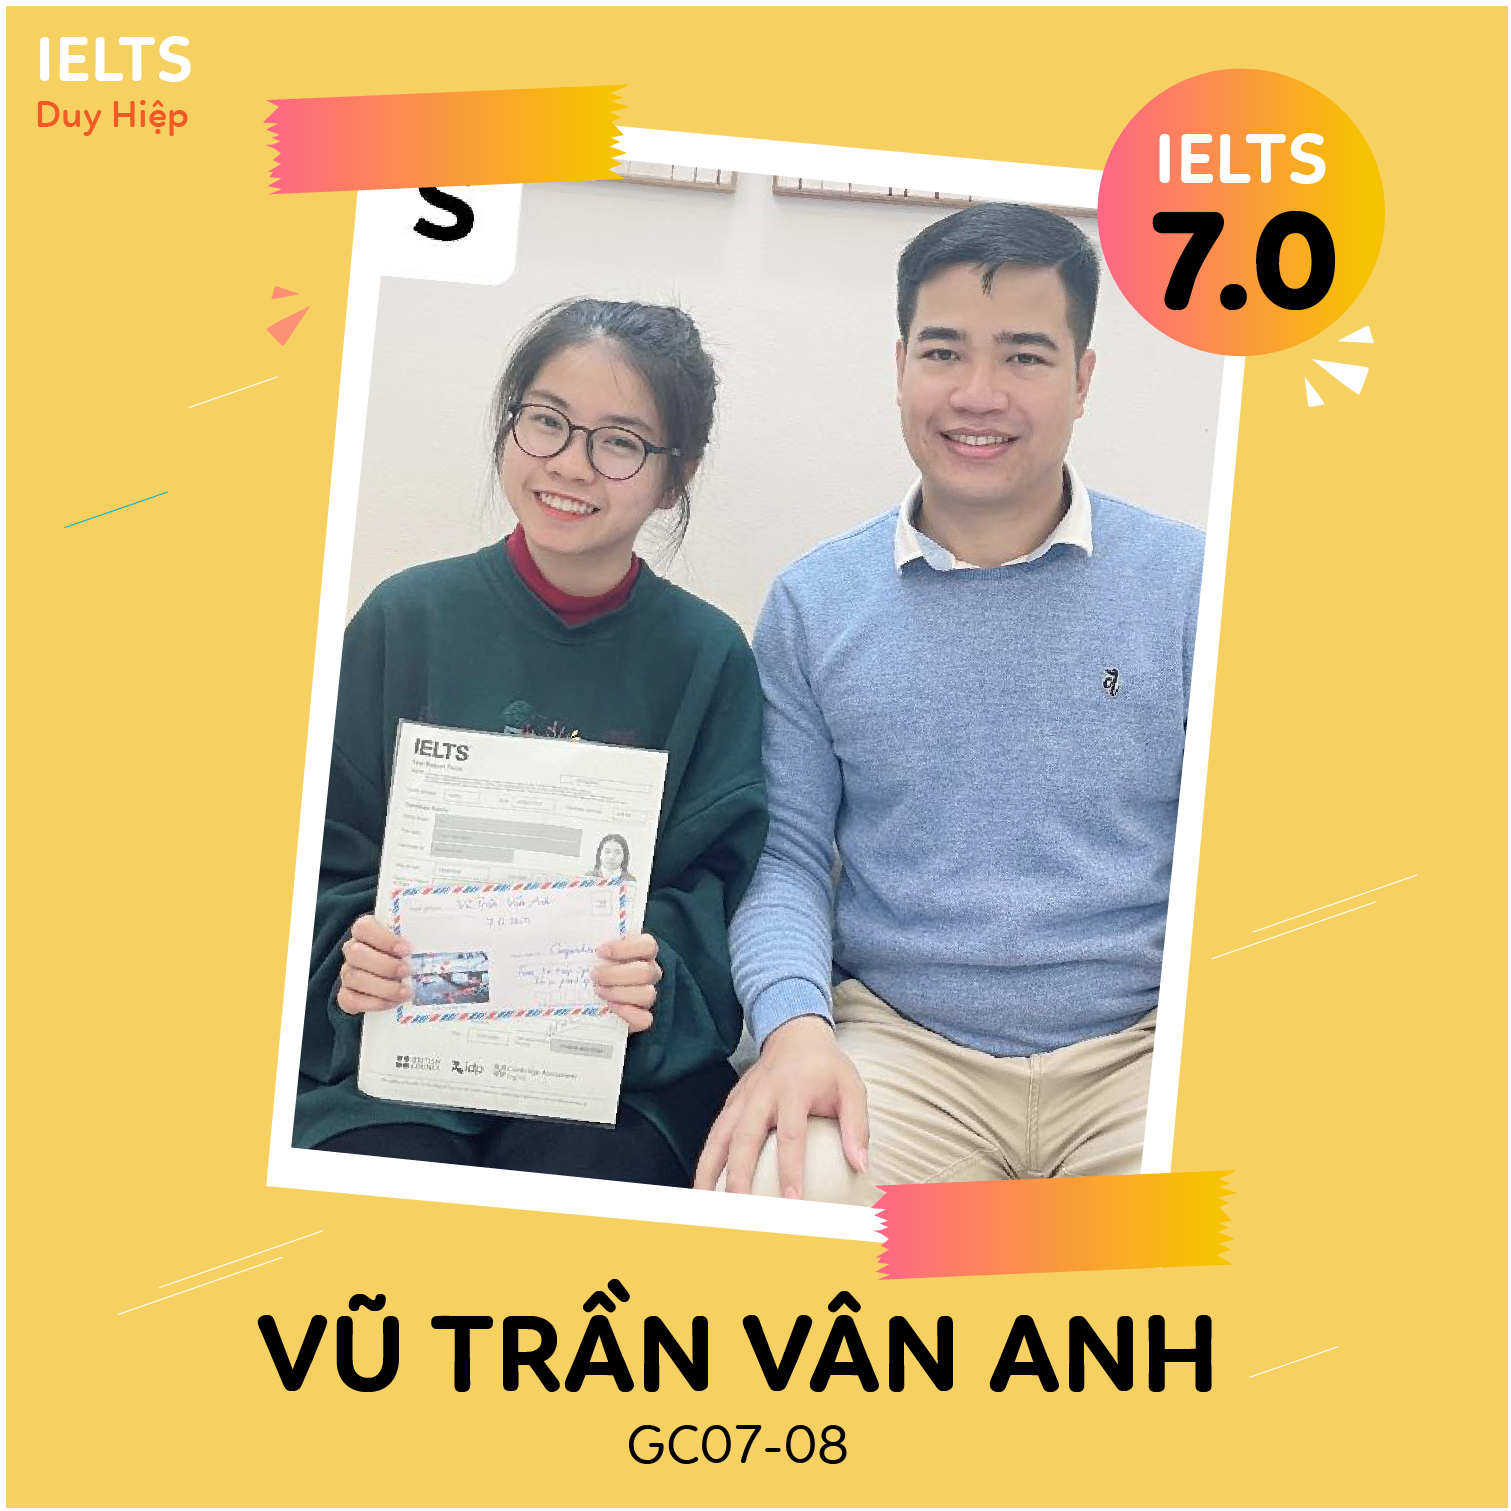 WALL OF FAME - Vũ Trần Vân Anh 7.0 IELTS